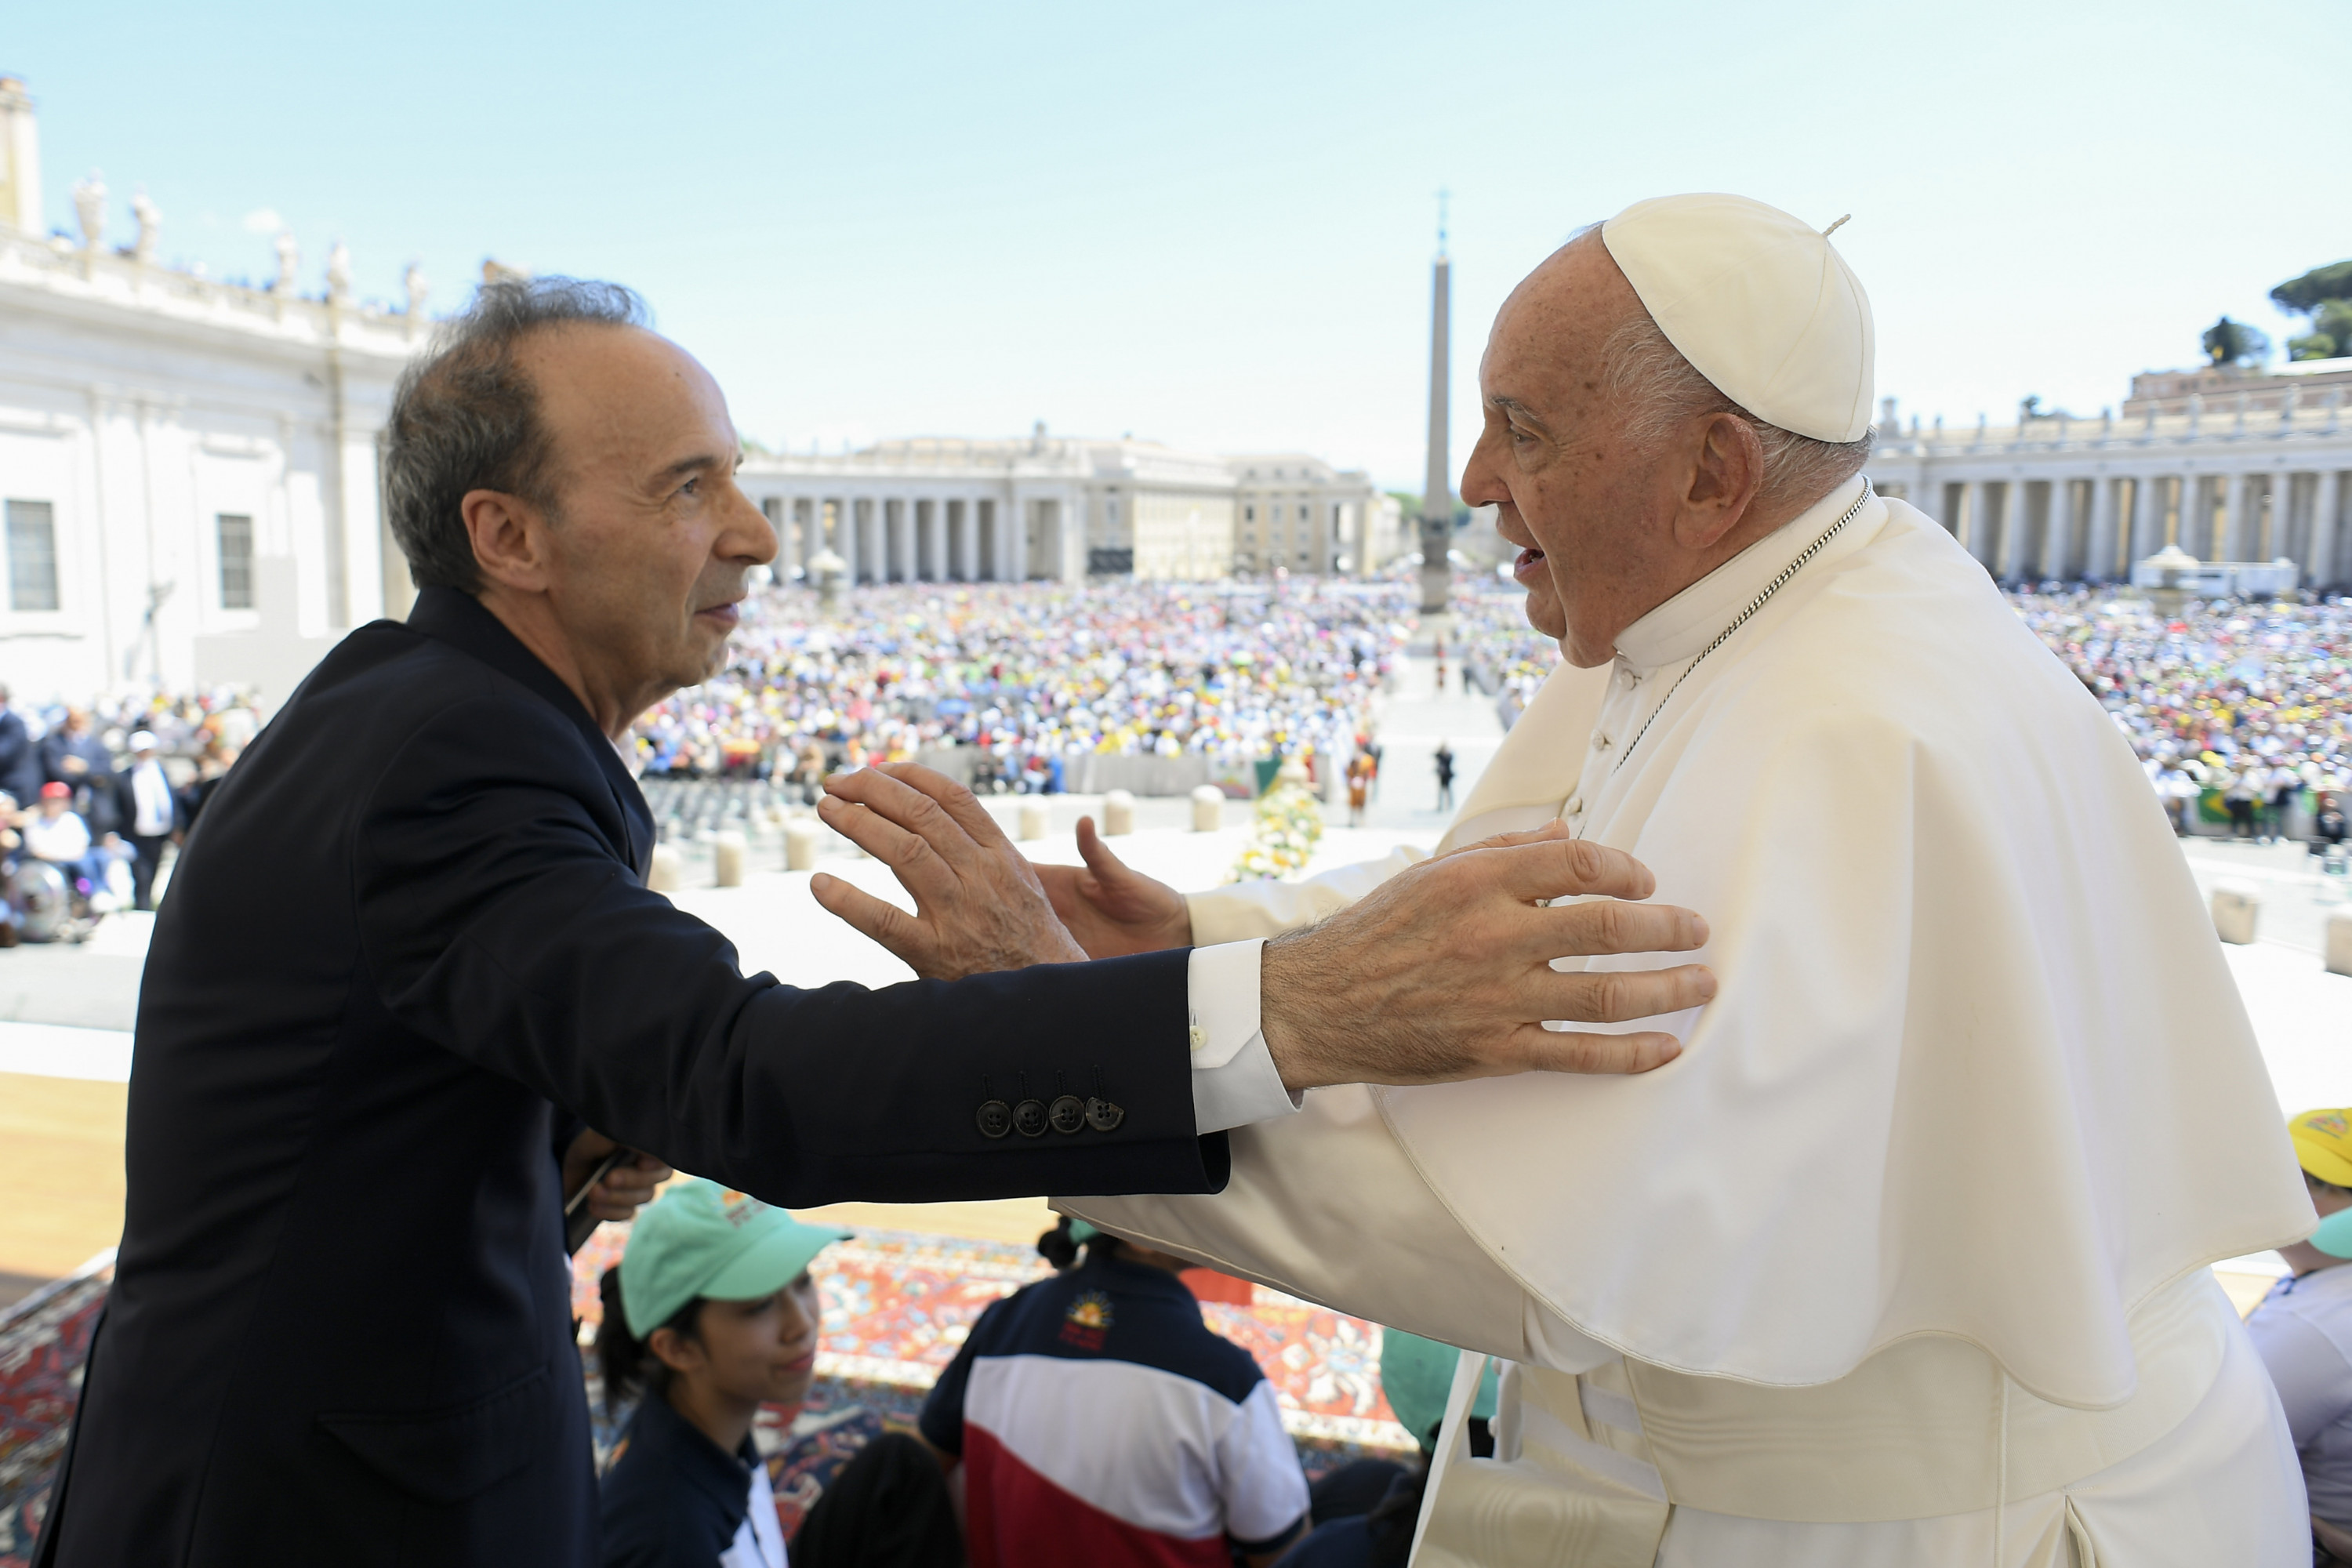 Roberto Benigni in papež Frančišek